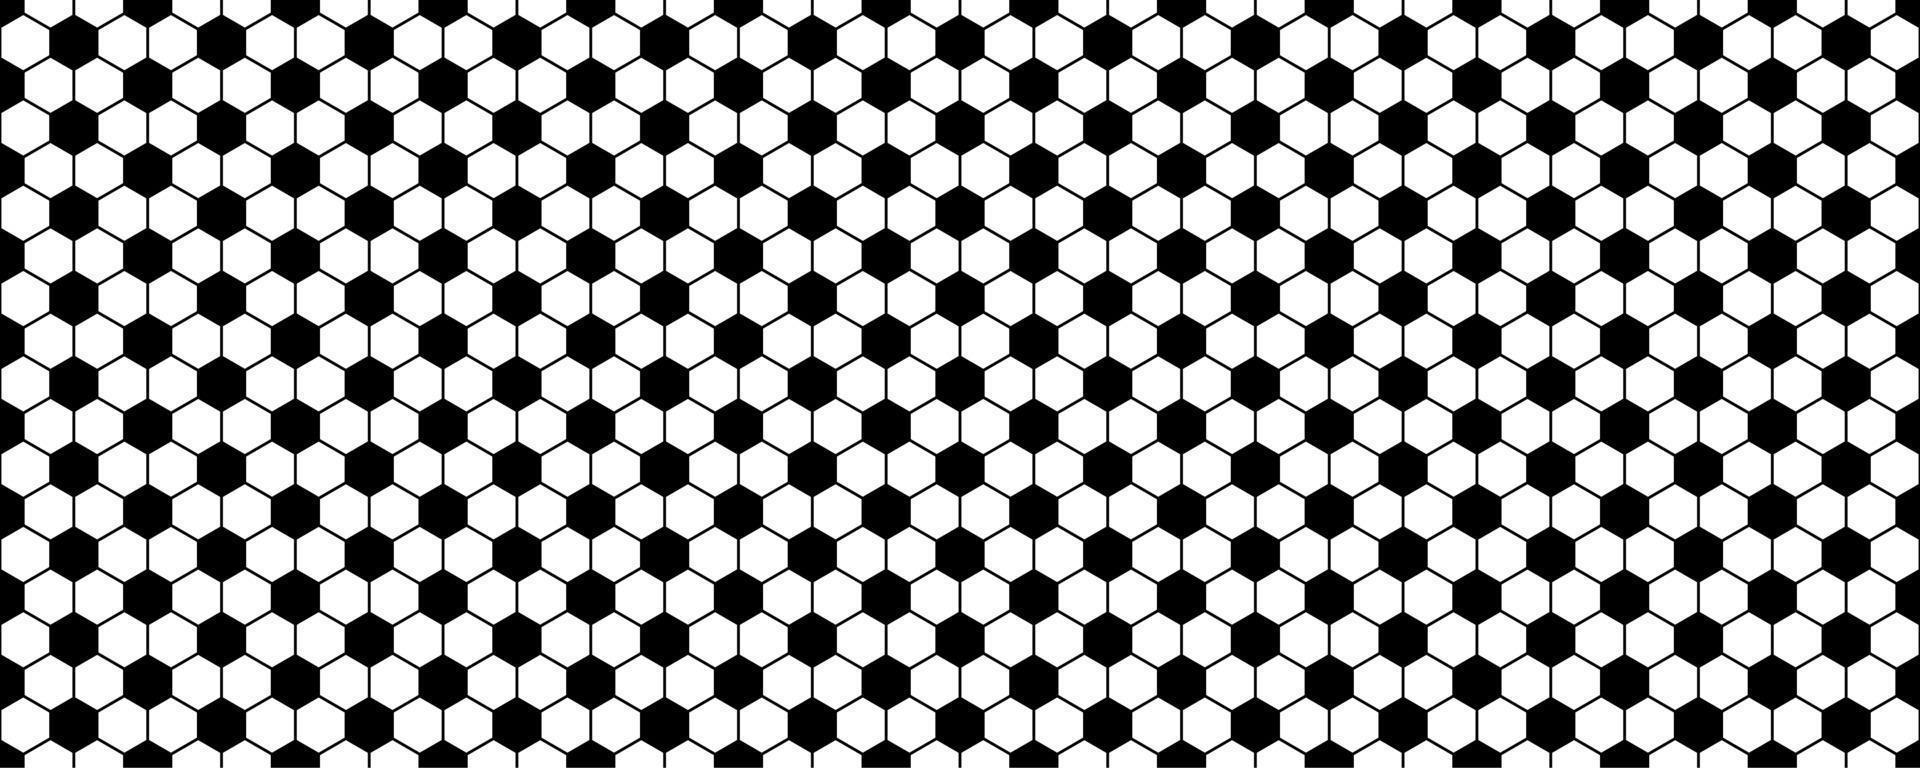 svart vit hexagonal sömlös mönster.fotboll mönster vektor